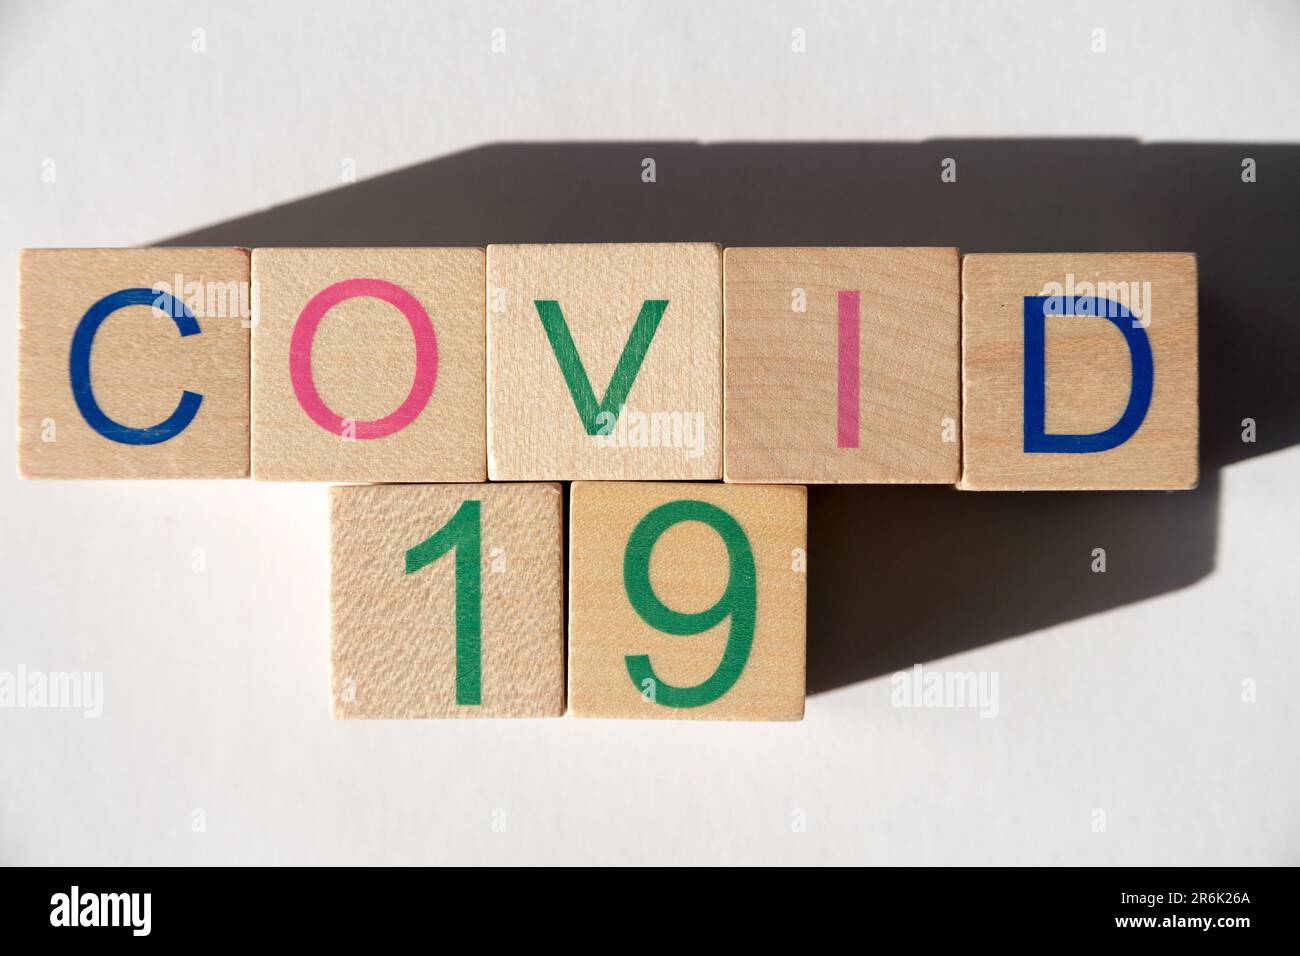 Enfermedad de coronavirus 2019 (COVID-19) © Wojciech Strozyk / Alamy Foto de archivo Foto de stock